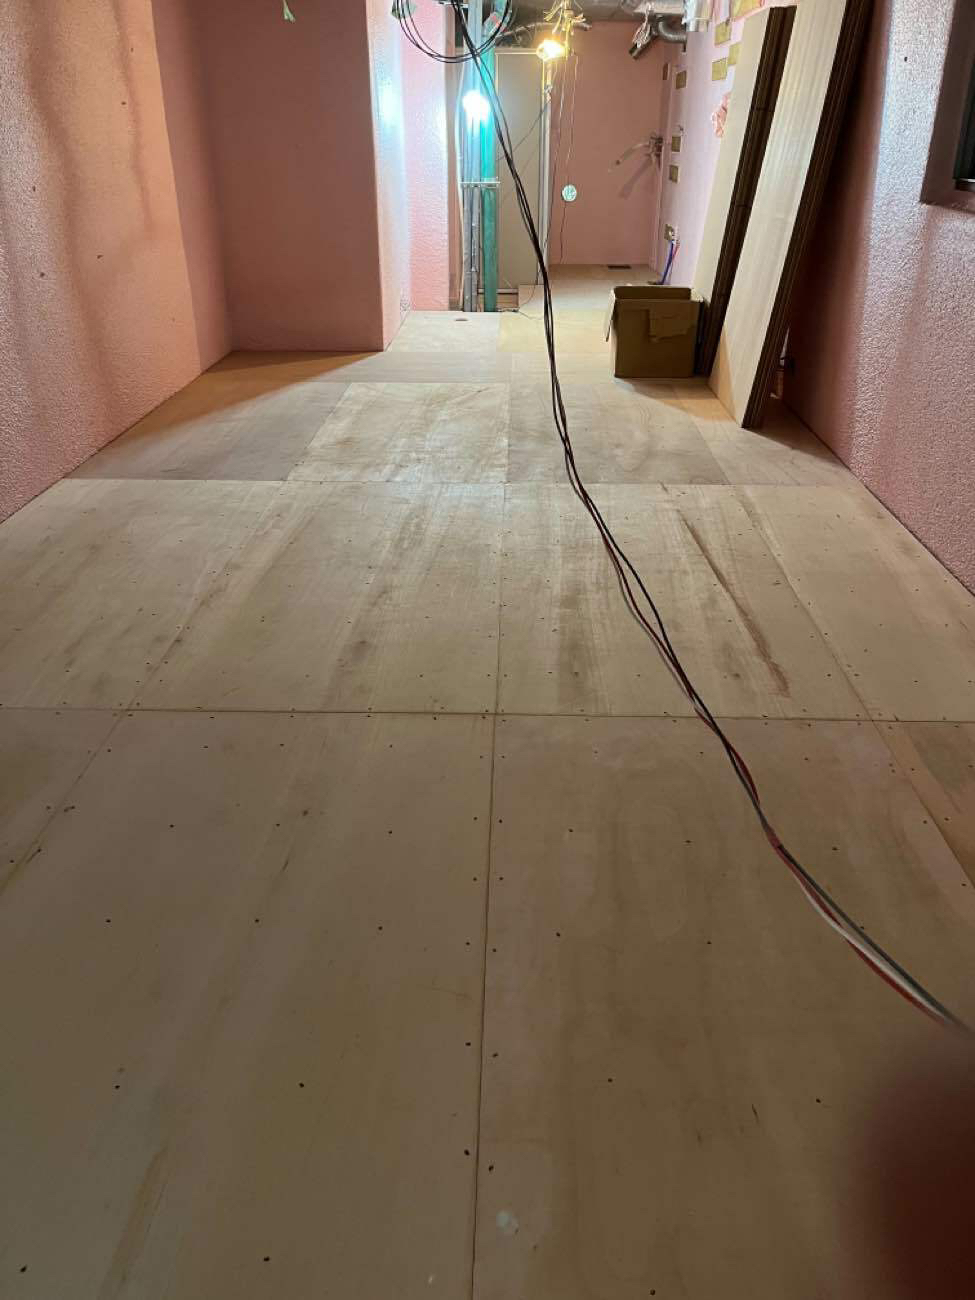 東京都墨田区にてマンションの新築置床工事を行いました。乾式二重床